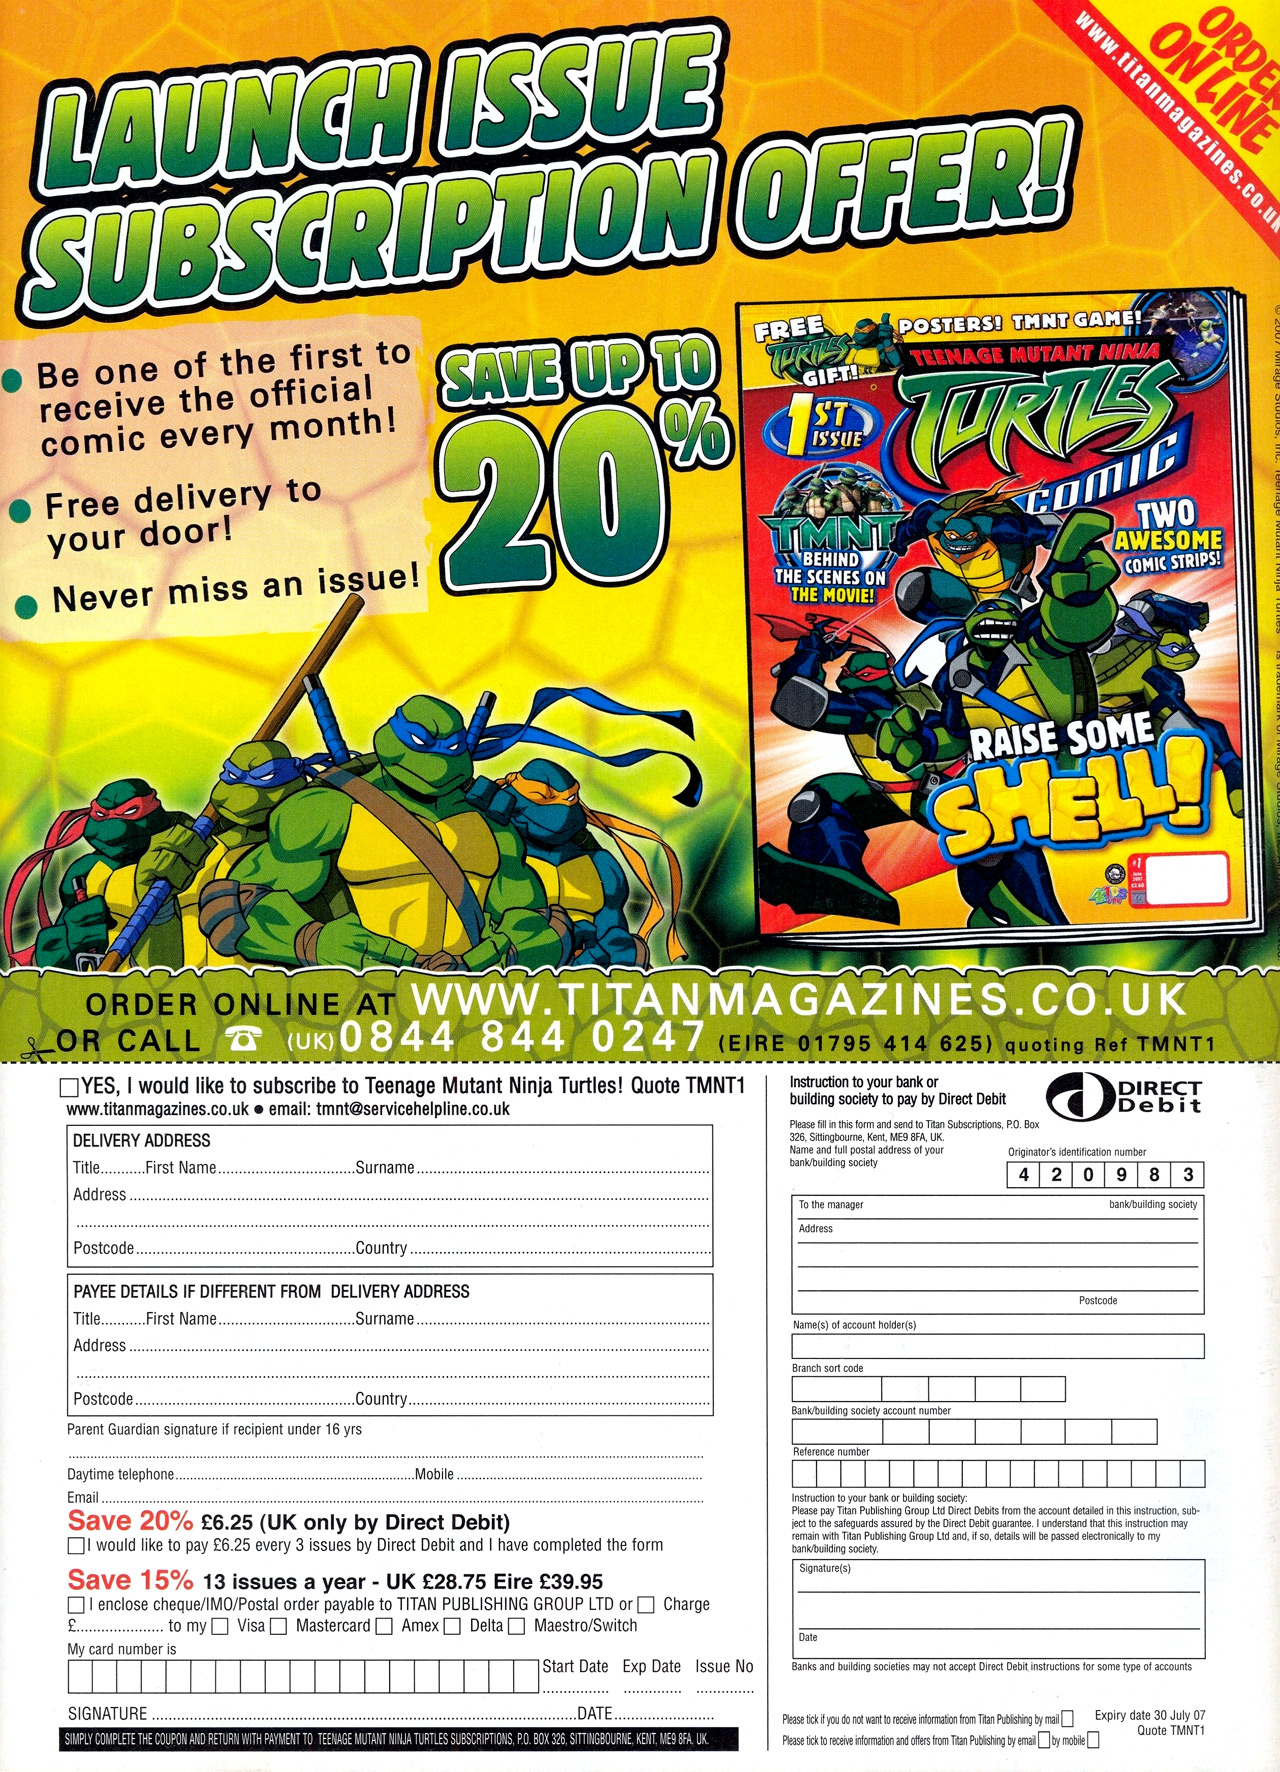 Read online Teenage Mutant Ninja Turtles Comic comic -  Issue #1 - 40